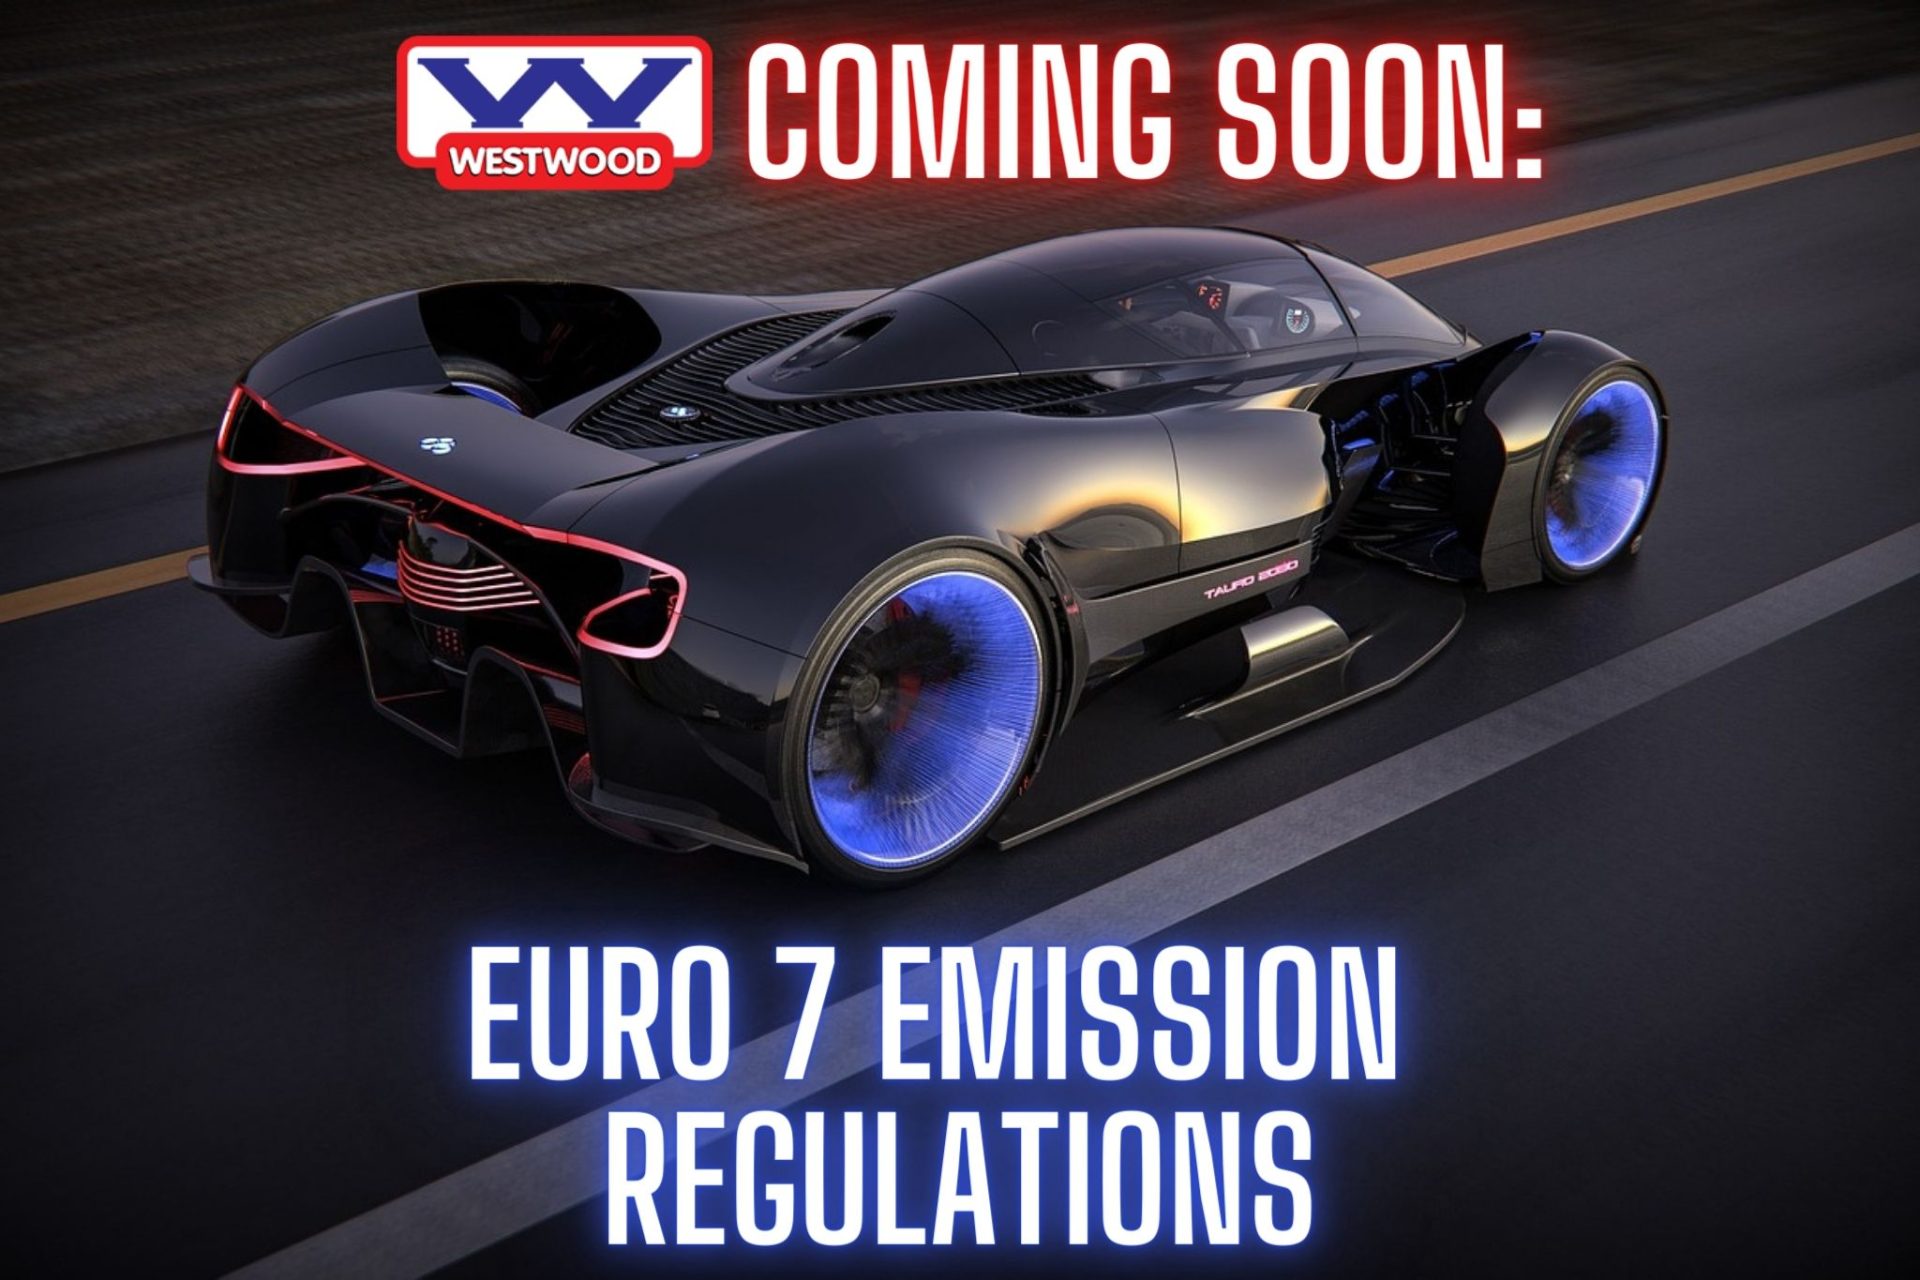 Euro 7 Emission Standards